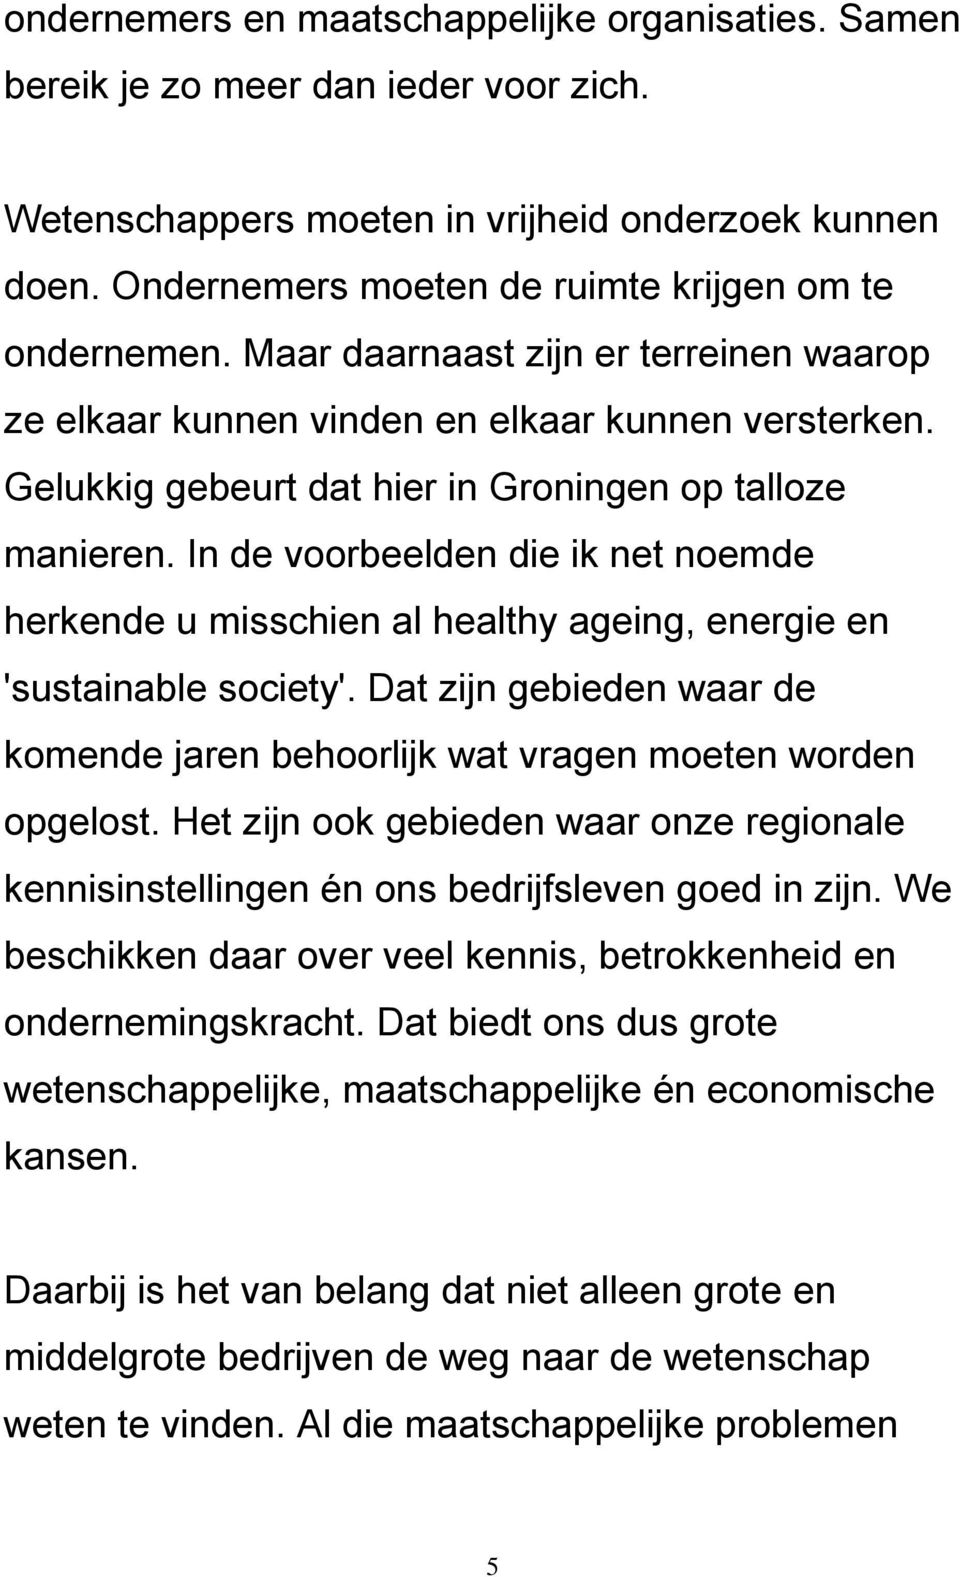 Gelukkig gebeurt dat hier in Groningen op talloze manieren. In de voorbeelden die ik net noemde herkende u misschien al healthy ageing, energie en 'sustainable society'.